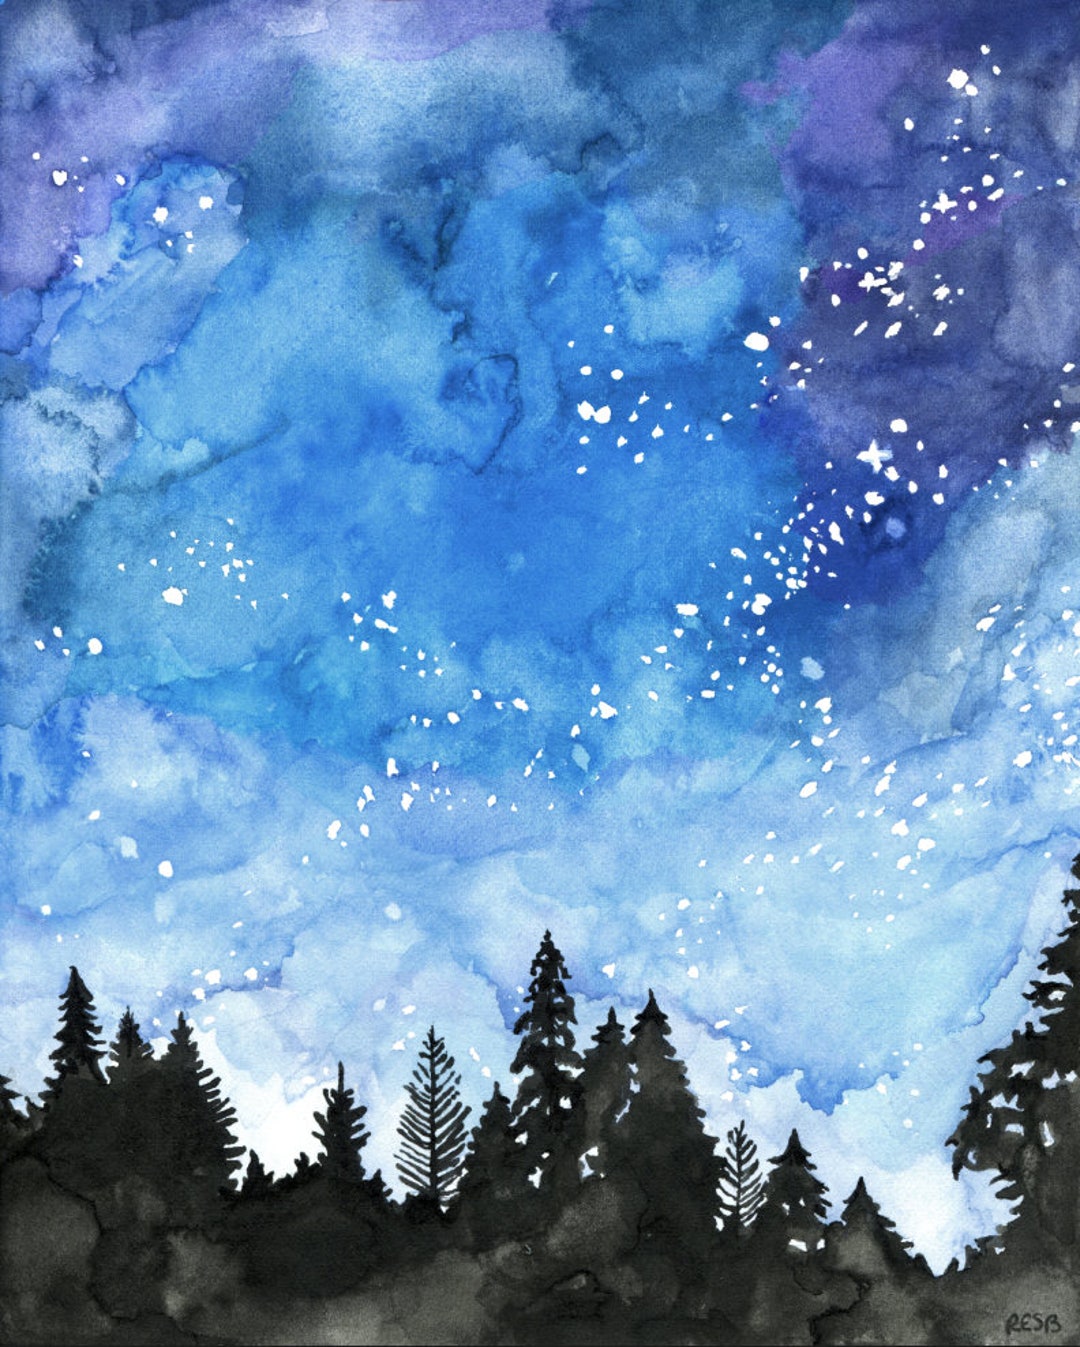 Painting Ideas #88, Blue Skies